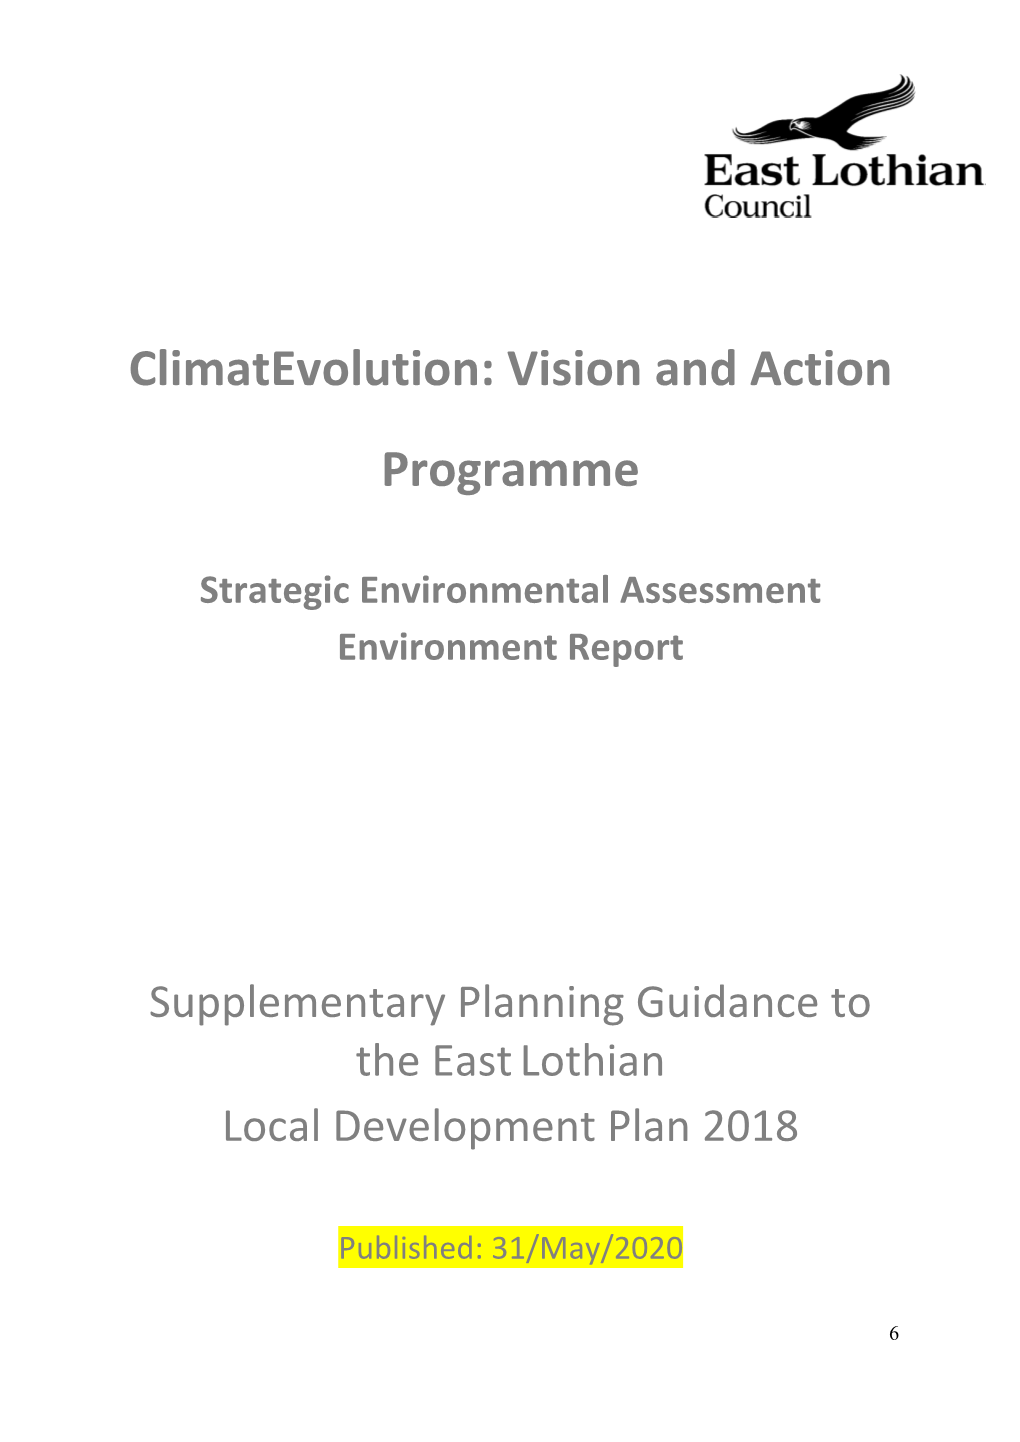 Draft Strategic Environmental Assessment